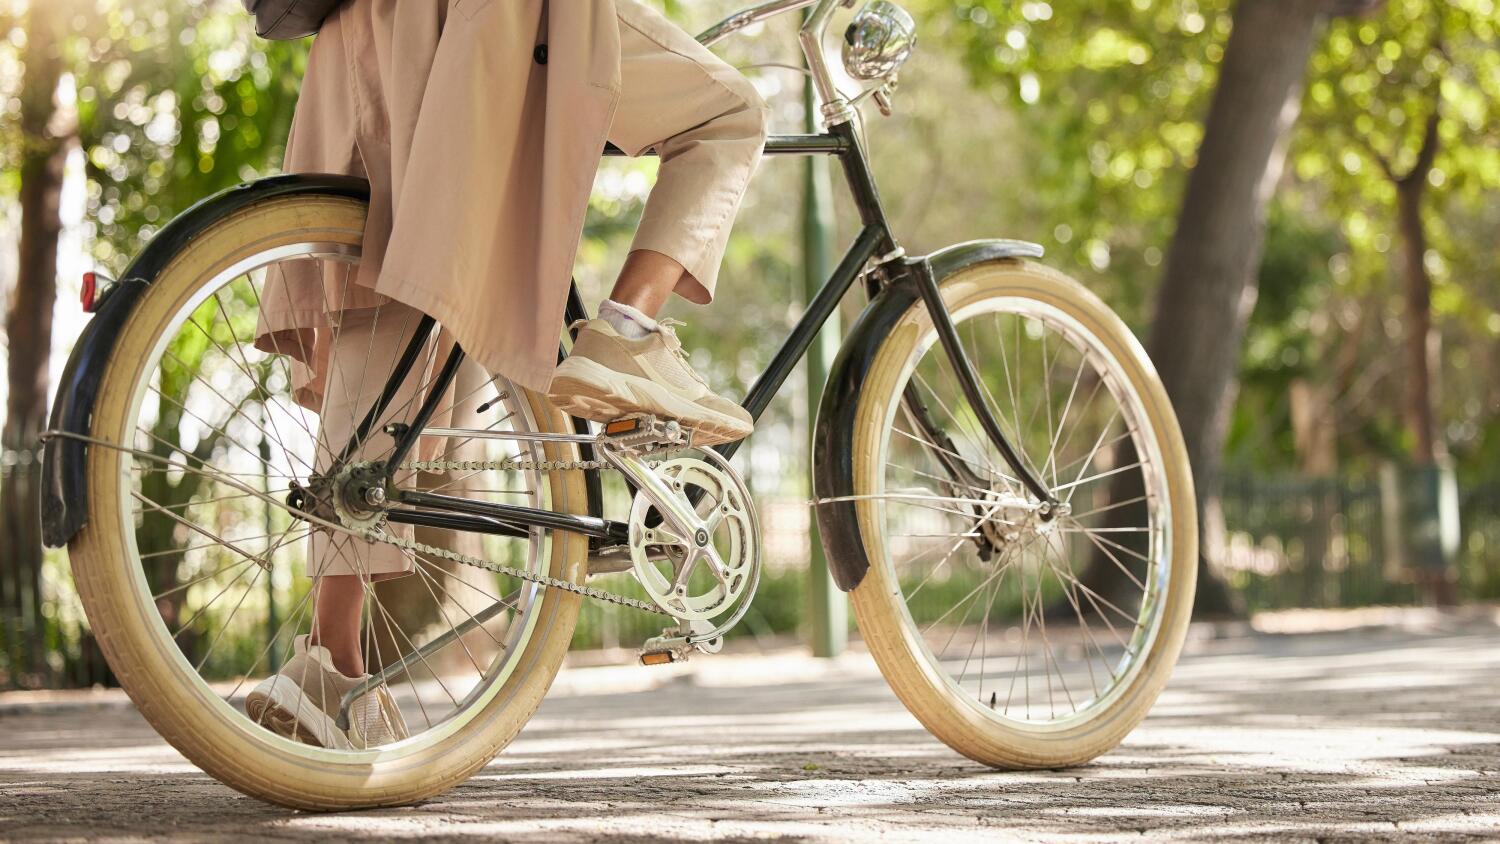 älä unohda polkupyörän keväthuoltoa - asiat, jotka tulee tehdä ennen käyttöönottoa